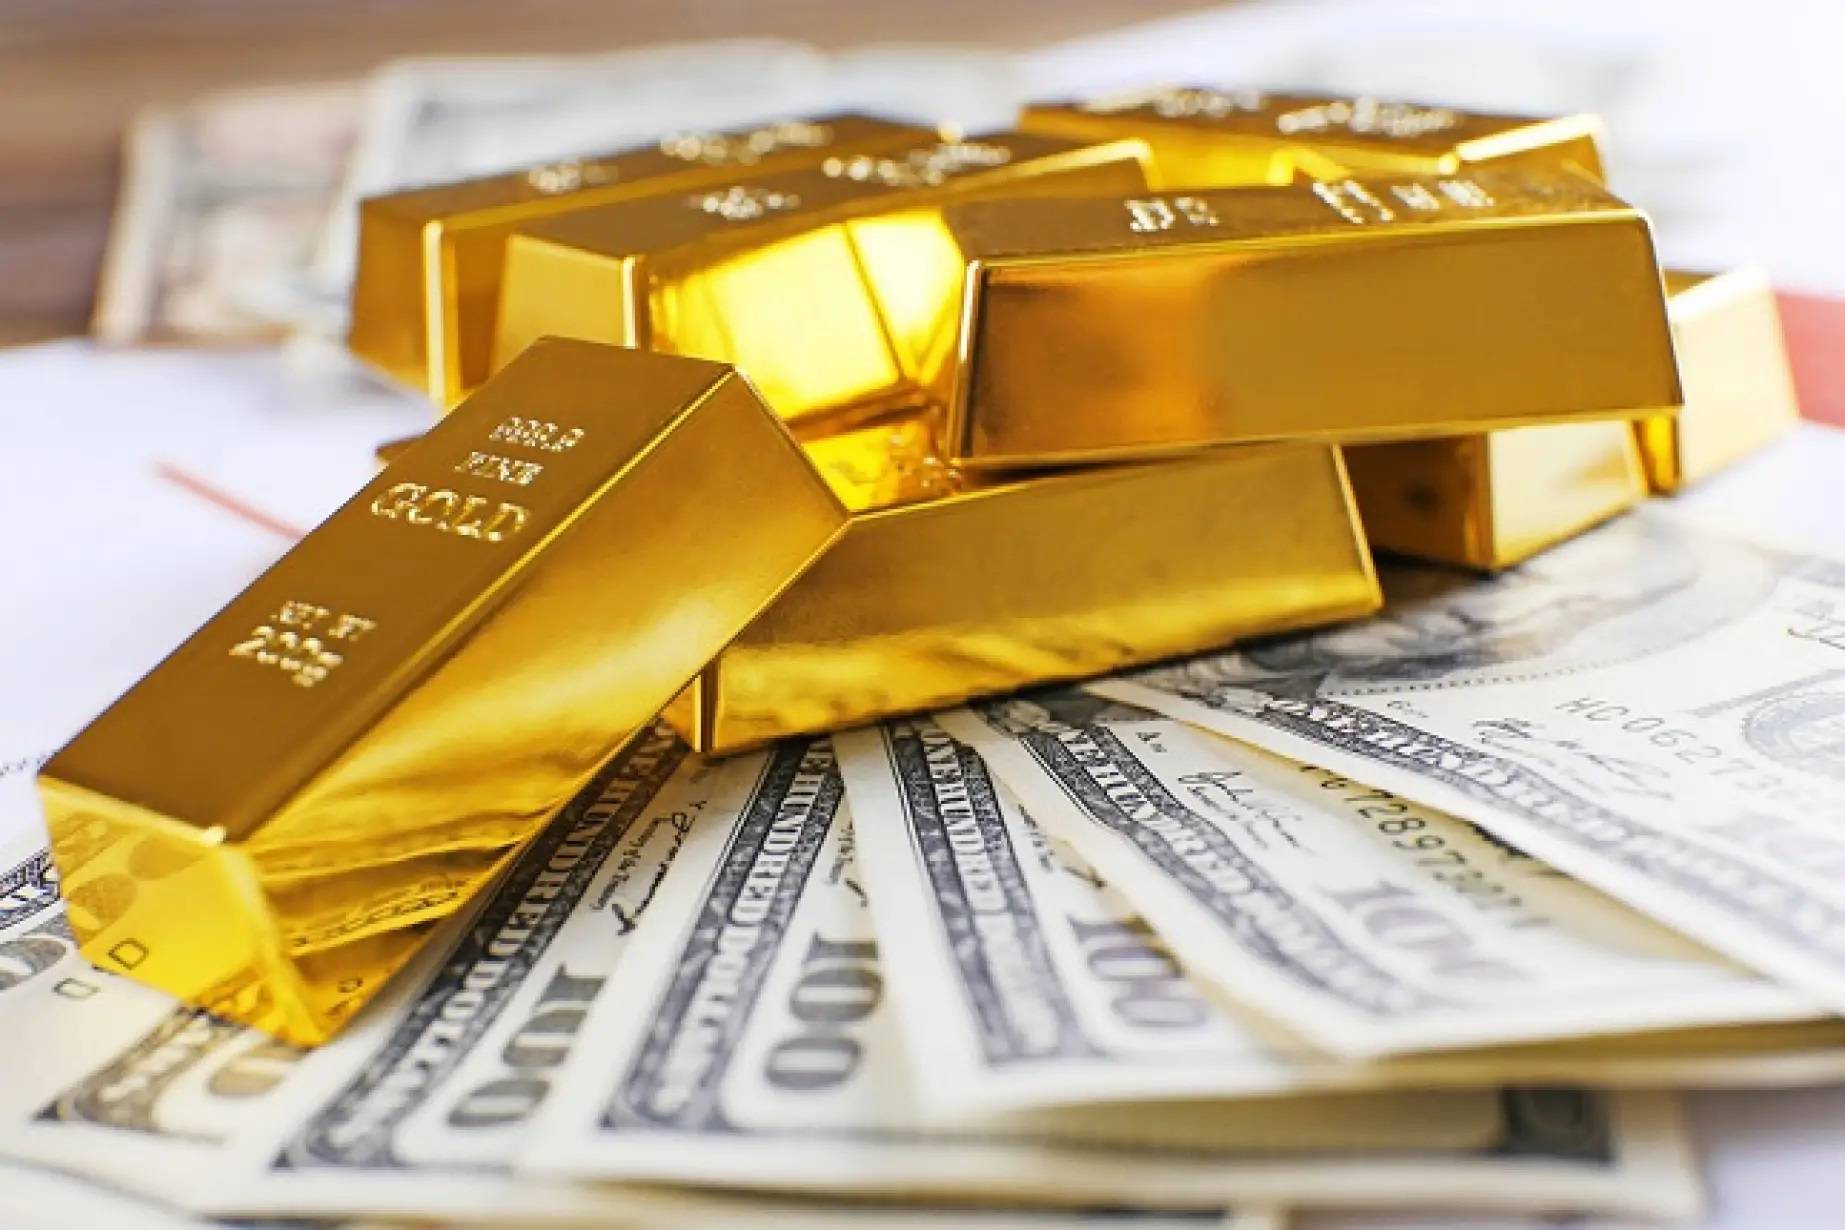 قیمت سکه، قیمت دلار و قیمت طلا امروز شنبه ۱۸ بهمن ۹۹ + جدول